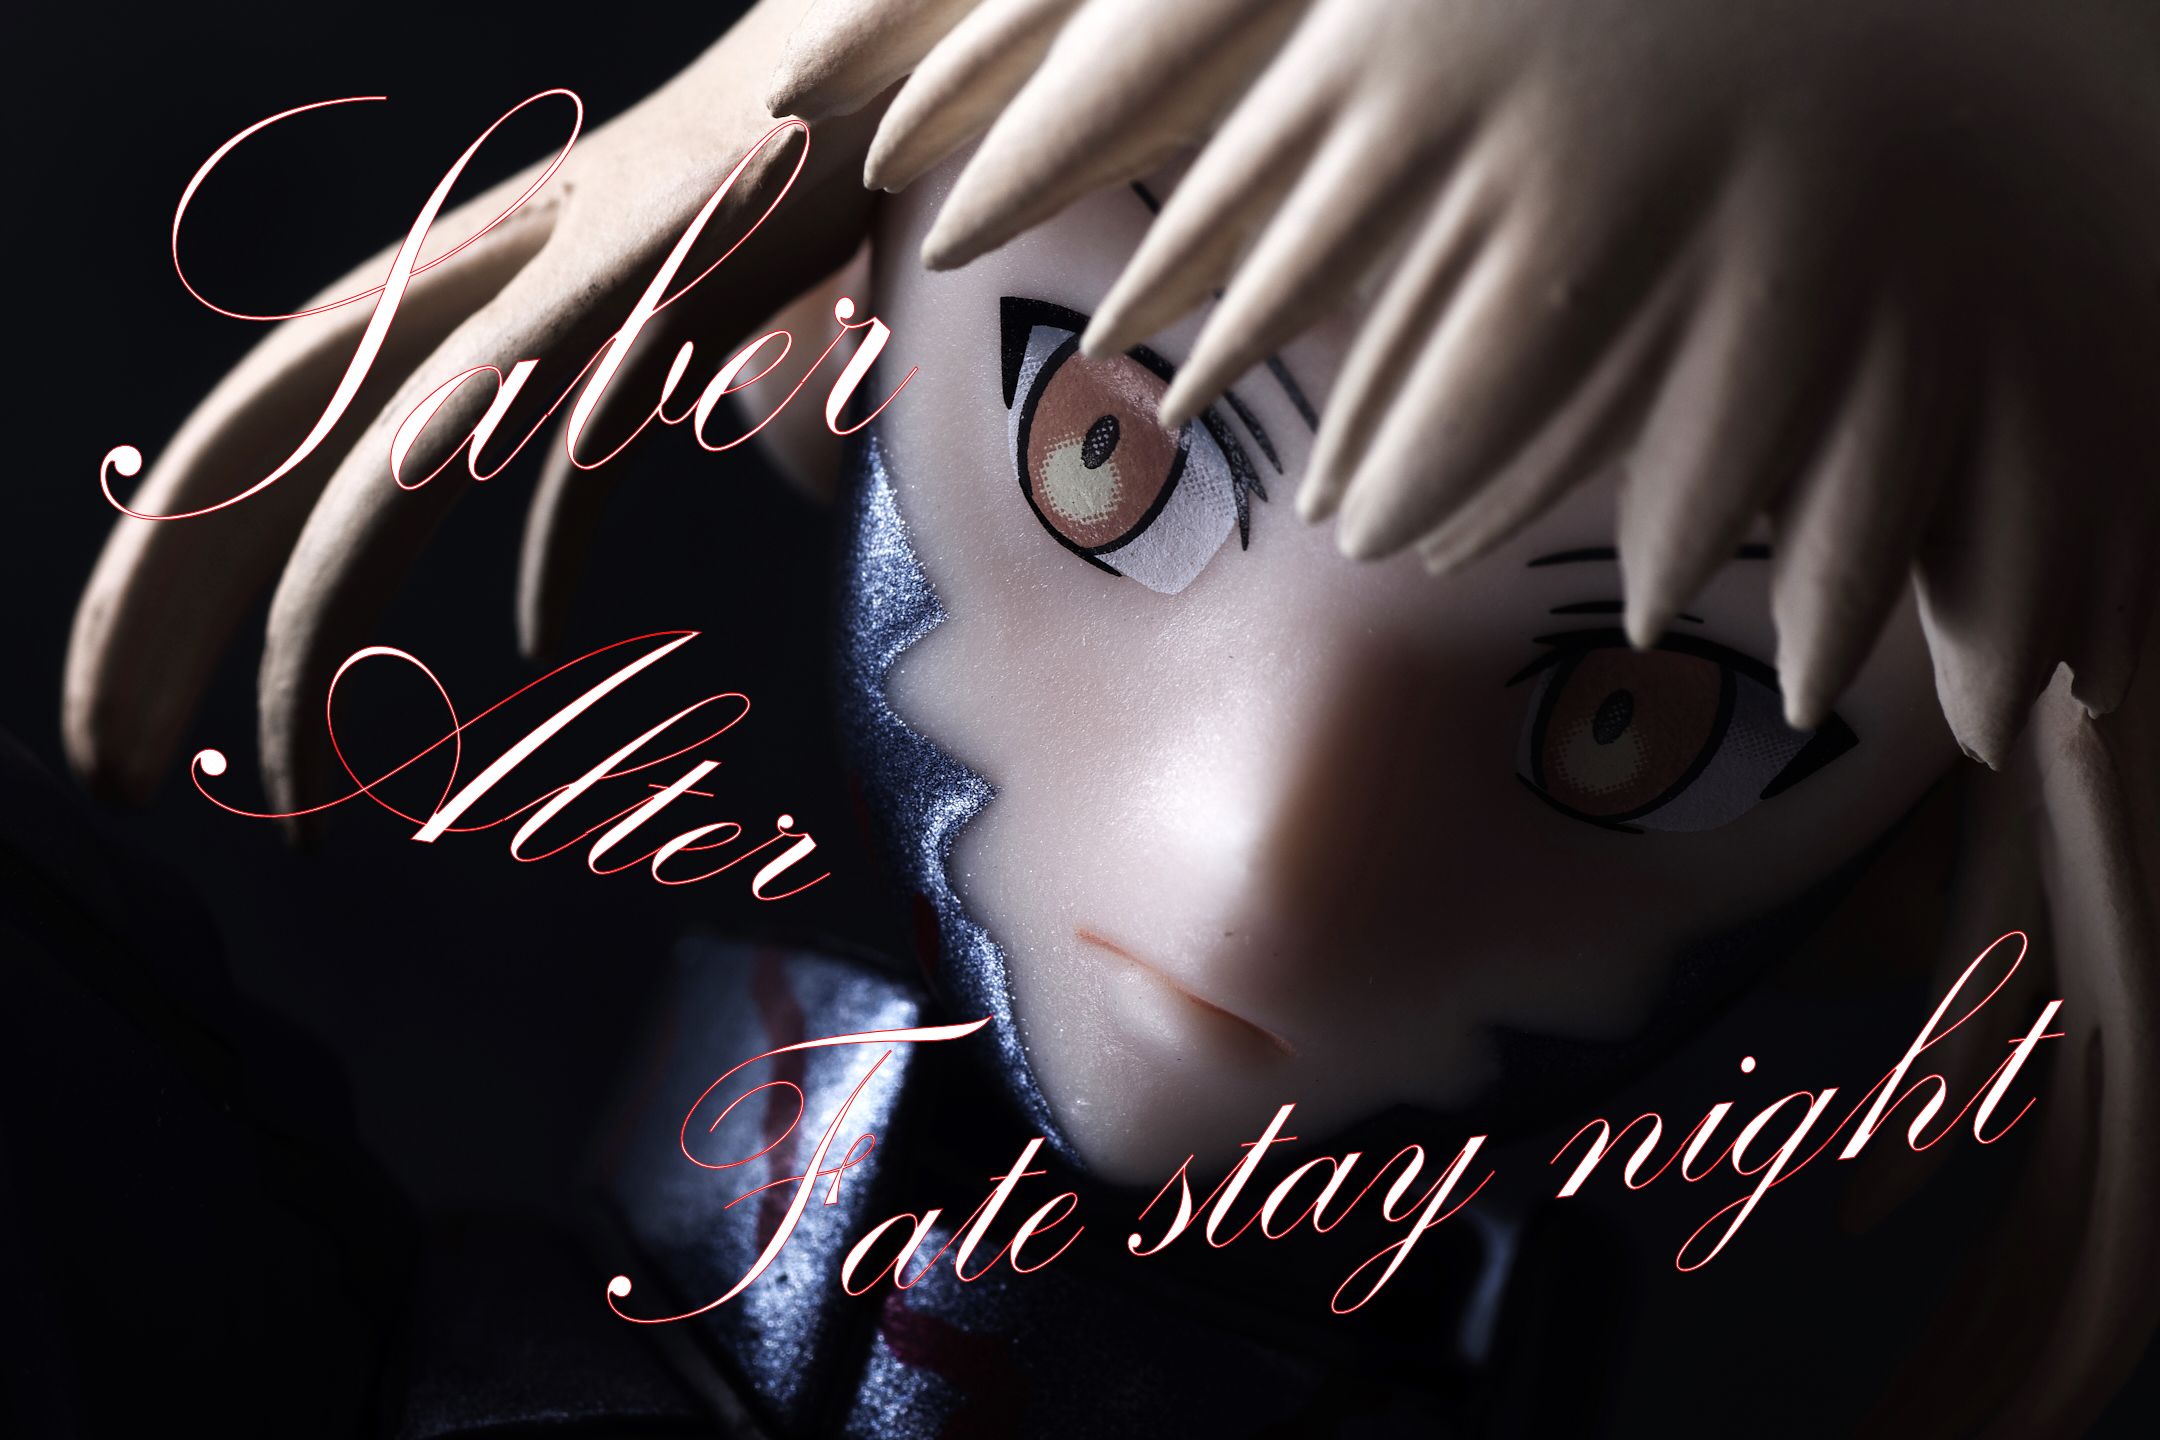 セイバーオルタ プレミアムフィギュア Fate/stay night(フェイト/ステイナイト) プライズ(1010377) セガ